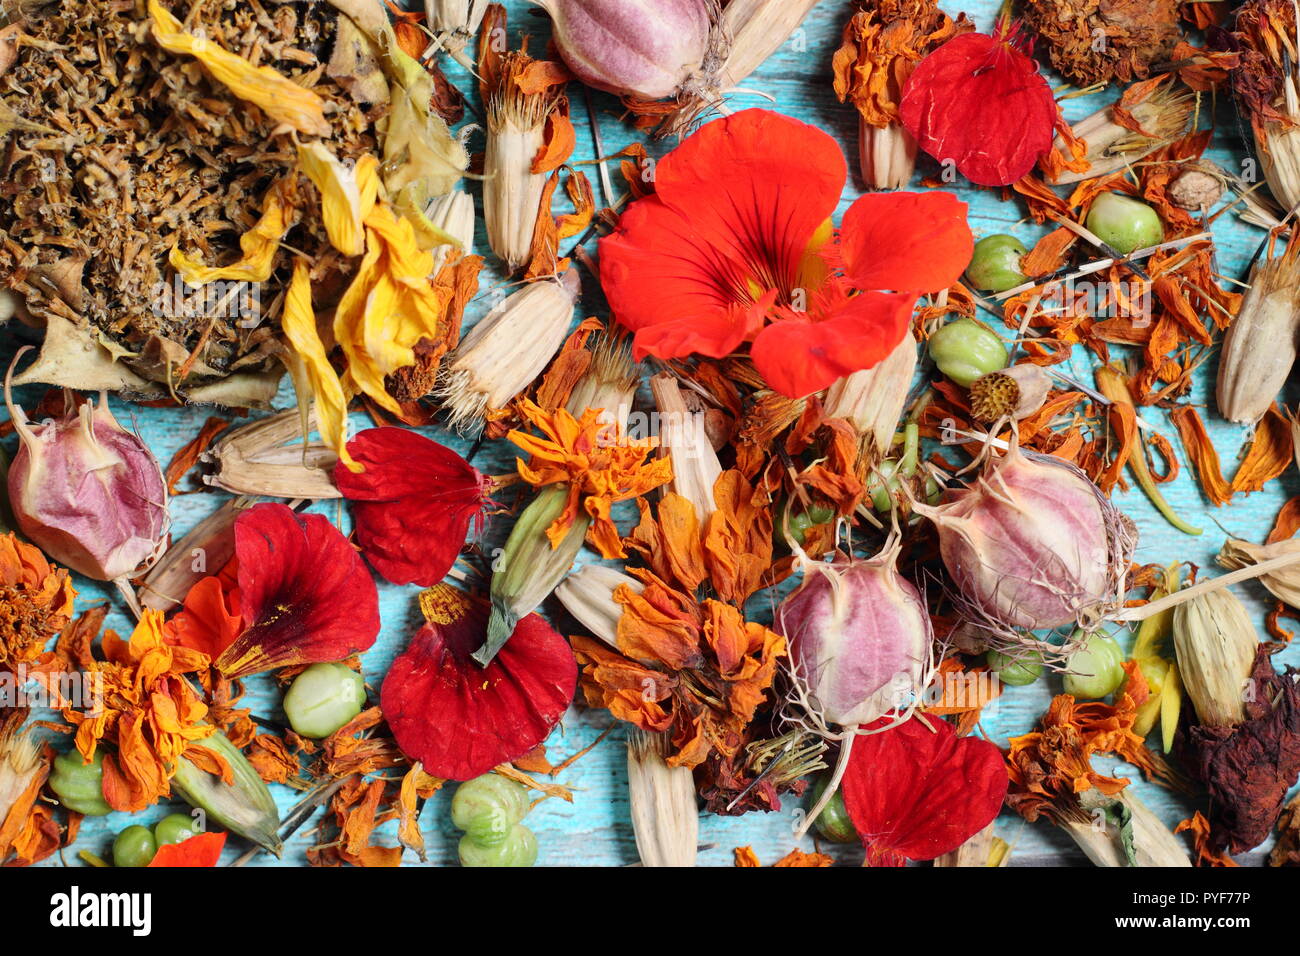 La collecte de semences de fleurs de jardin - tournesol (Helianthus annuus), capucine (Tropaeolum) marigold (Tagetes) l'amour dans un brouillard (Nigella) Banque D'Images